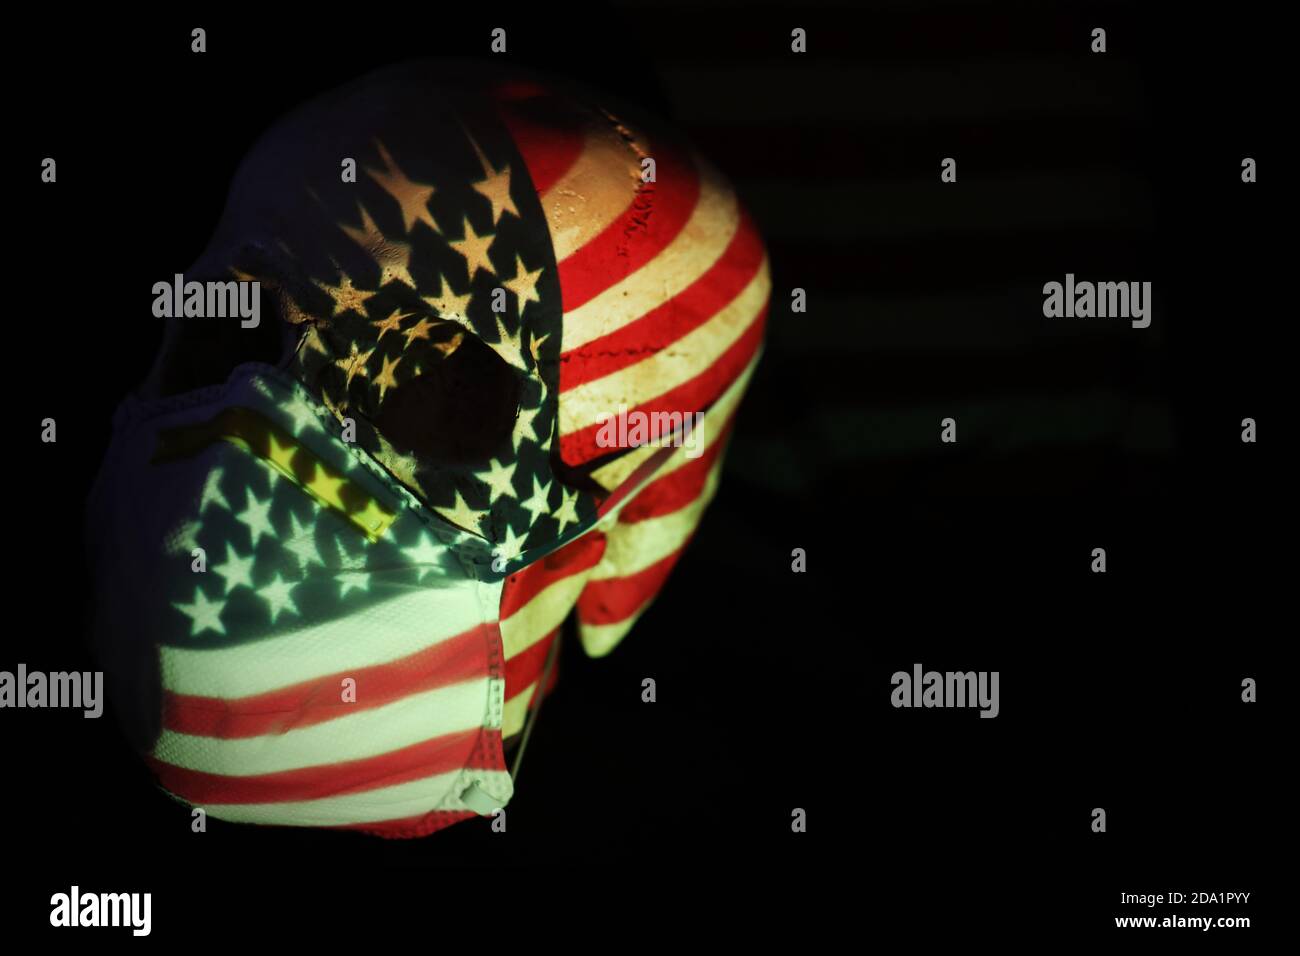 Le drapeau américain des étoiles et des rayures est projeté sur un crâne portant un masque respiratoire. Corona virus covid 19 pandémie mondiale social distanciant meas Banque D'Images